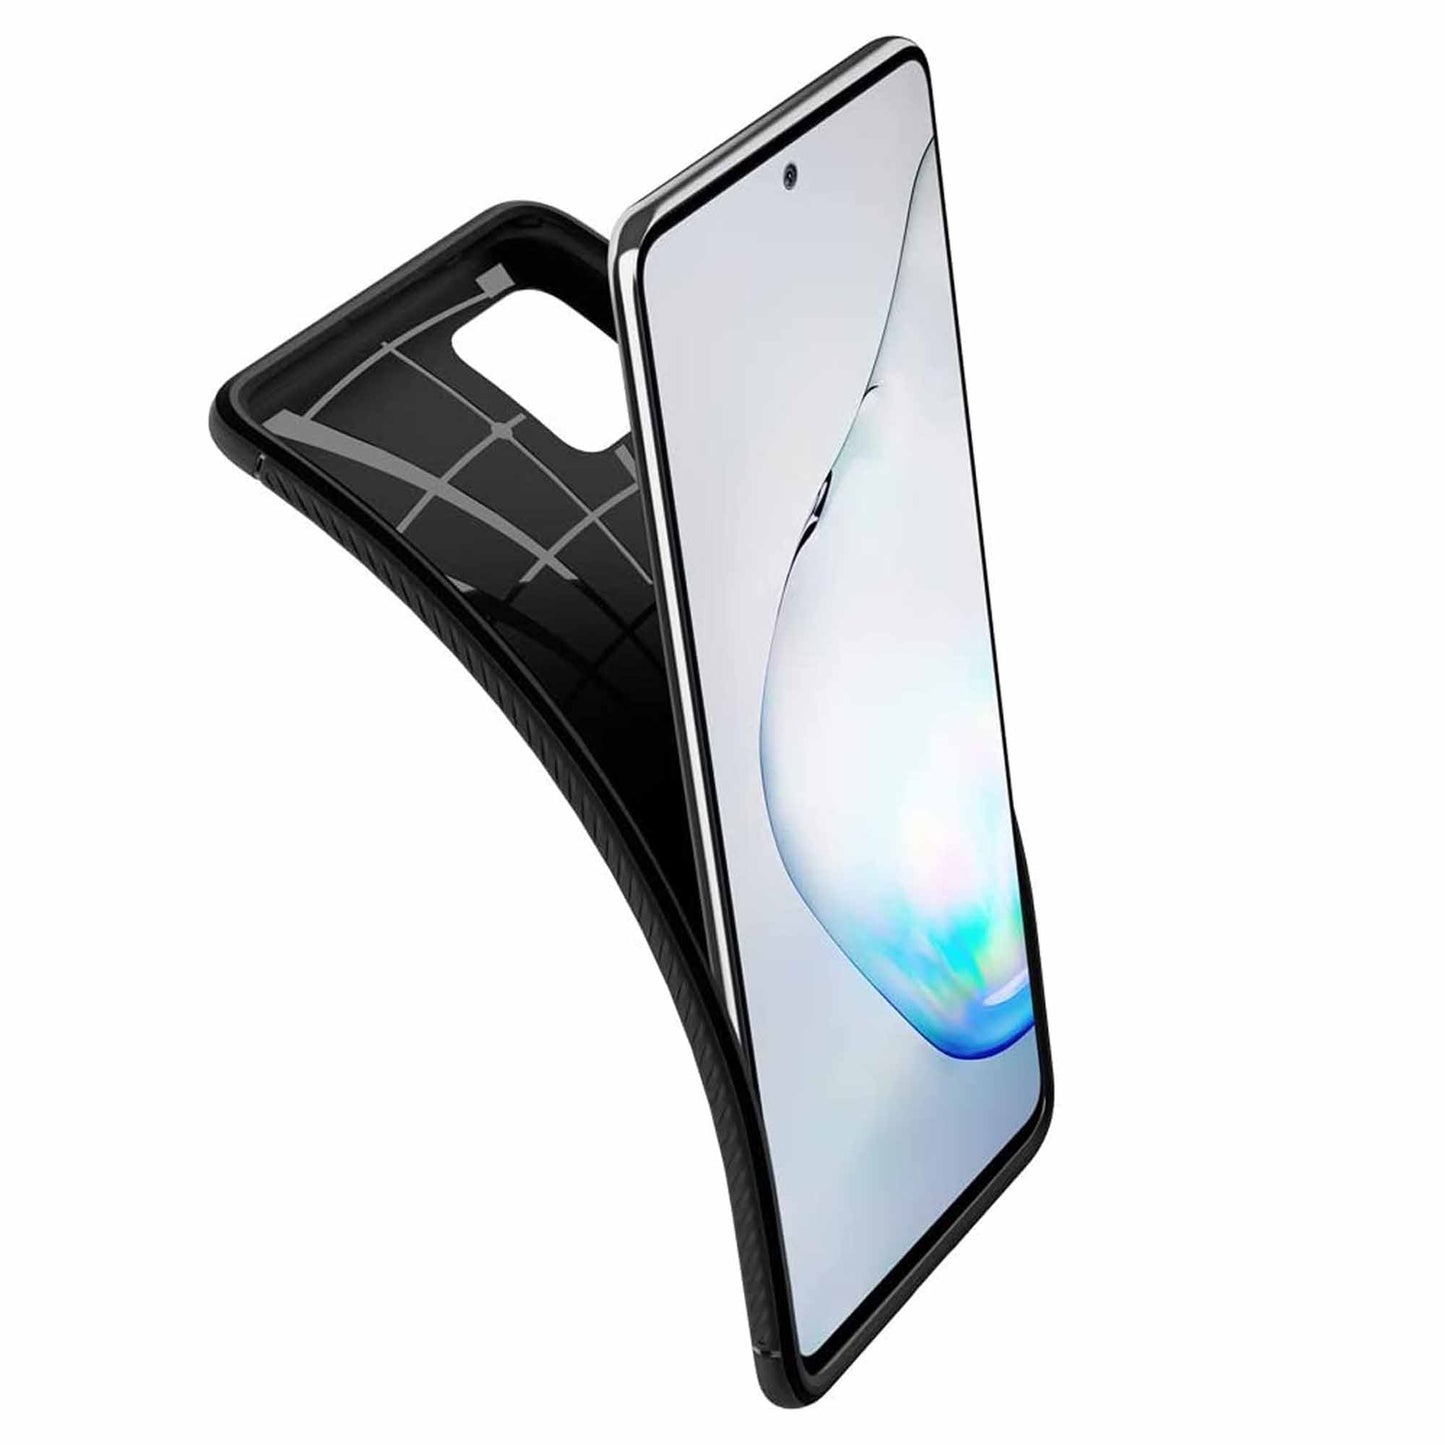 Spigen Rugged Armor Case for Samsung Galaxy Note 10 Lite - Black (Barcode: 8809685625407 )